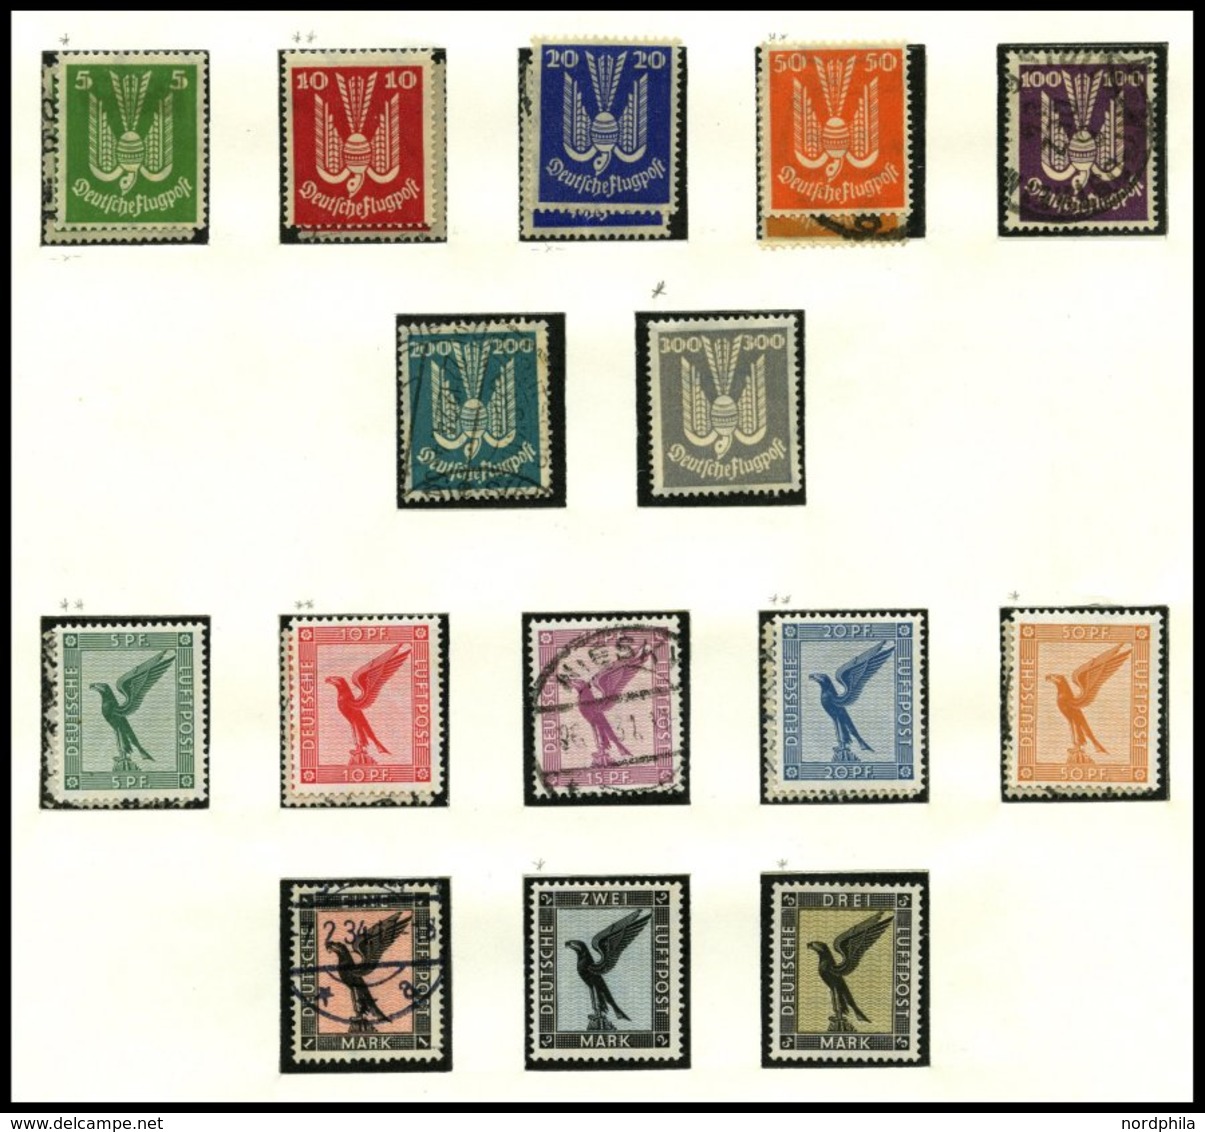 SAMMLUNGEN o,*,**,Brief , interessante Sammlung Dt. Reich von 1923-1945 im SAFE Falzlosalbum, ab 1932 bis auf Bl. 2 komp